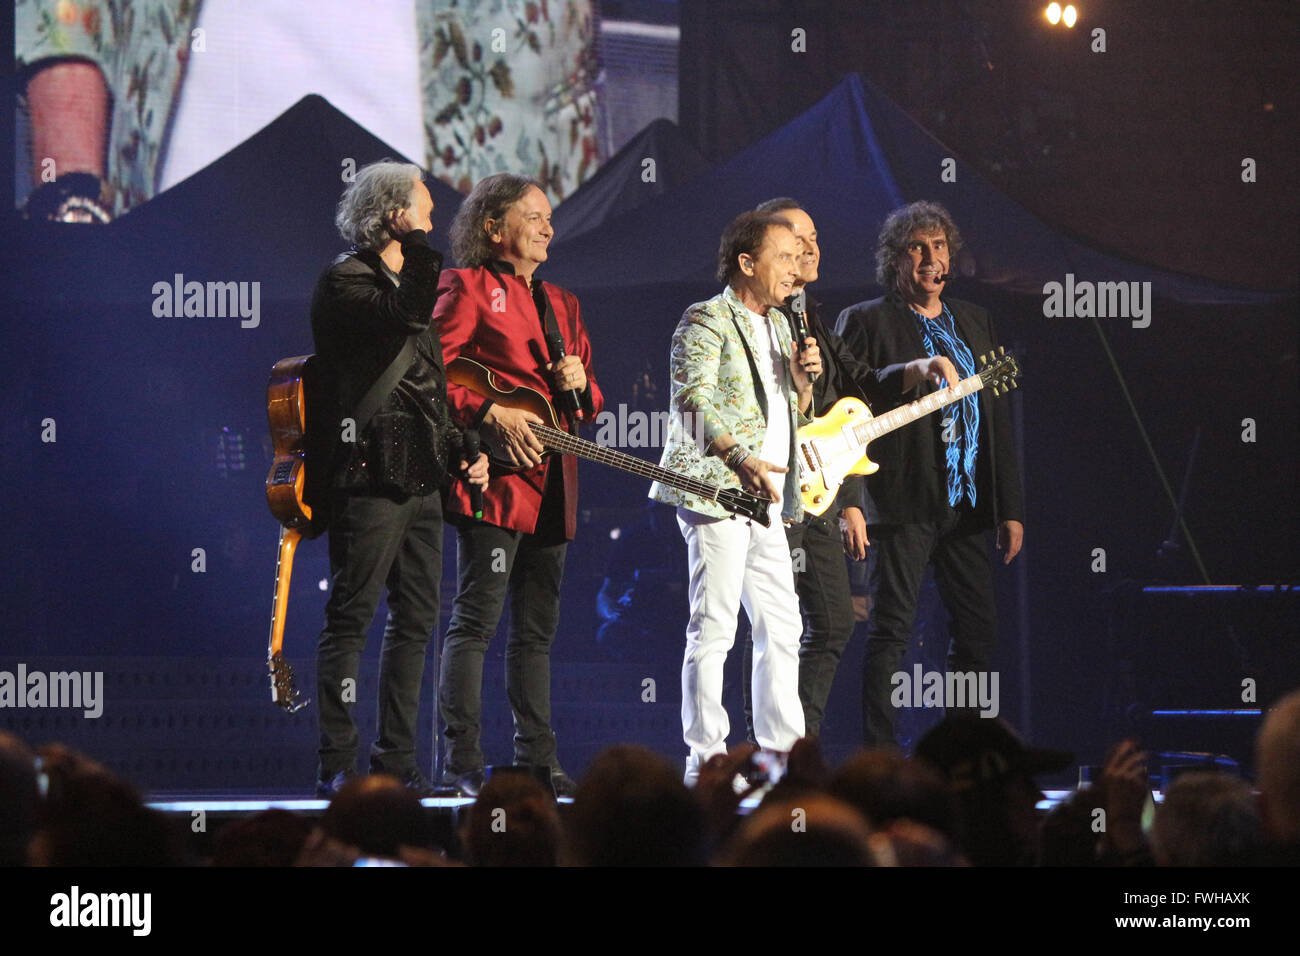 Milán, Italia. 11 Jun, 2016. La banda de rock italiana Pooh en etapa en Milán, Italia. Crédito: Luca Quadrio/Alamy Live News. Foto de stock